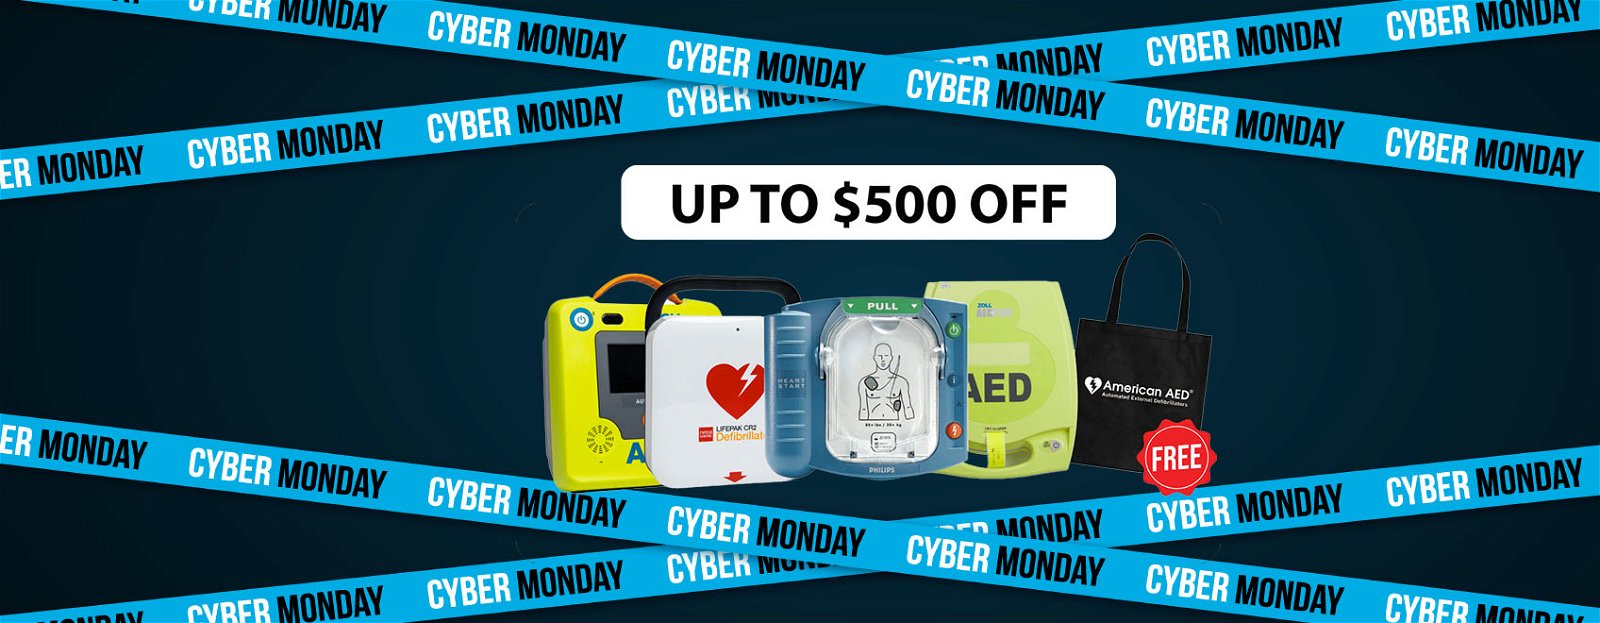 Buy AED Device - AED Defibrillators Black Friday Special